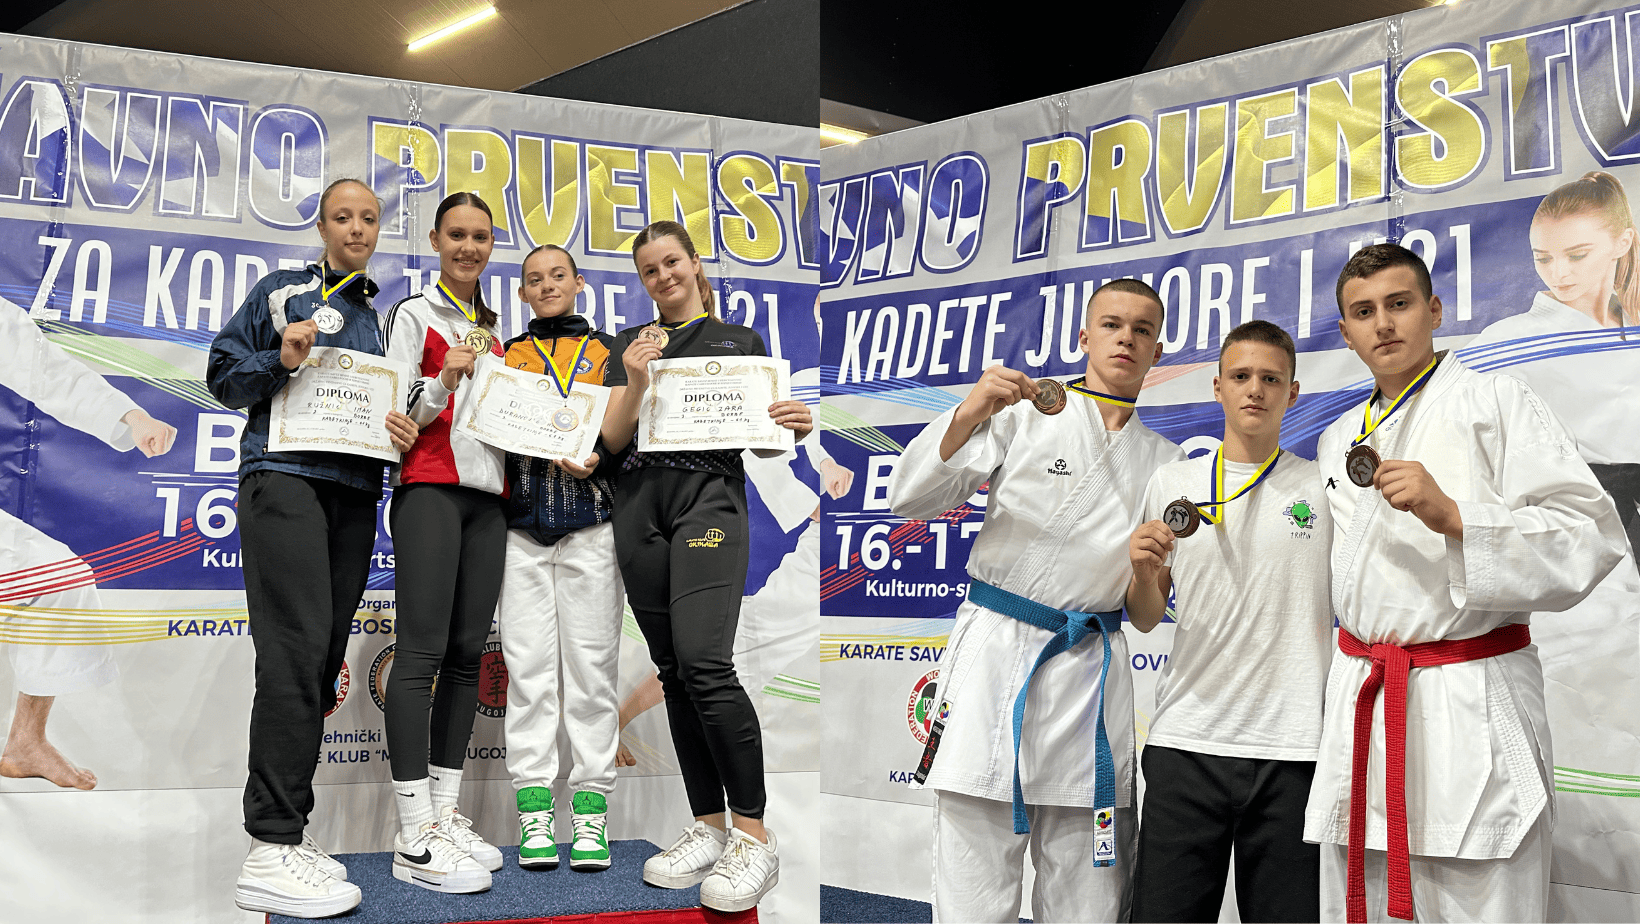 Karataši Regeneracije osvojili srebro i bronzu na Državnom karate prvenstvu za kadete, juniore i U21